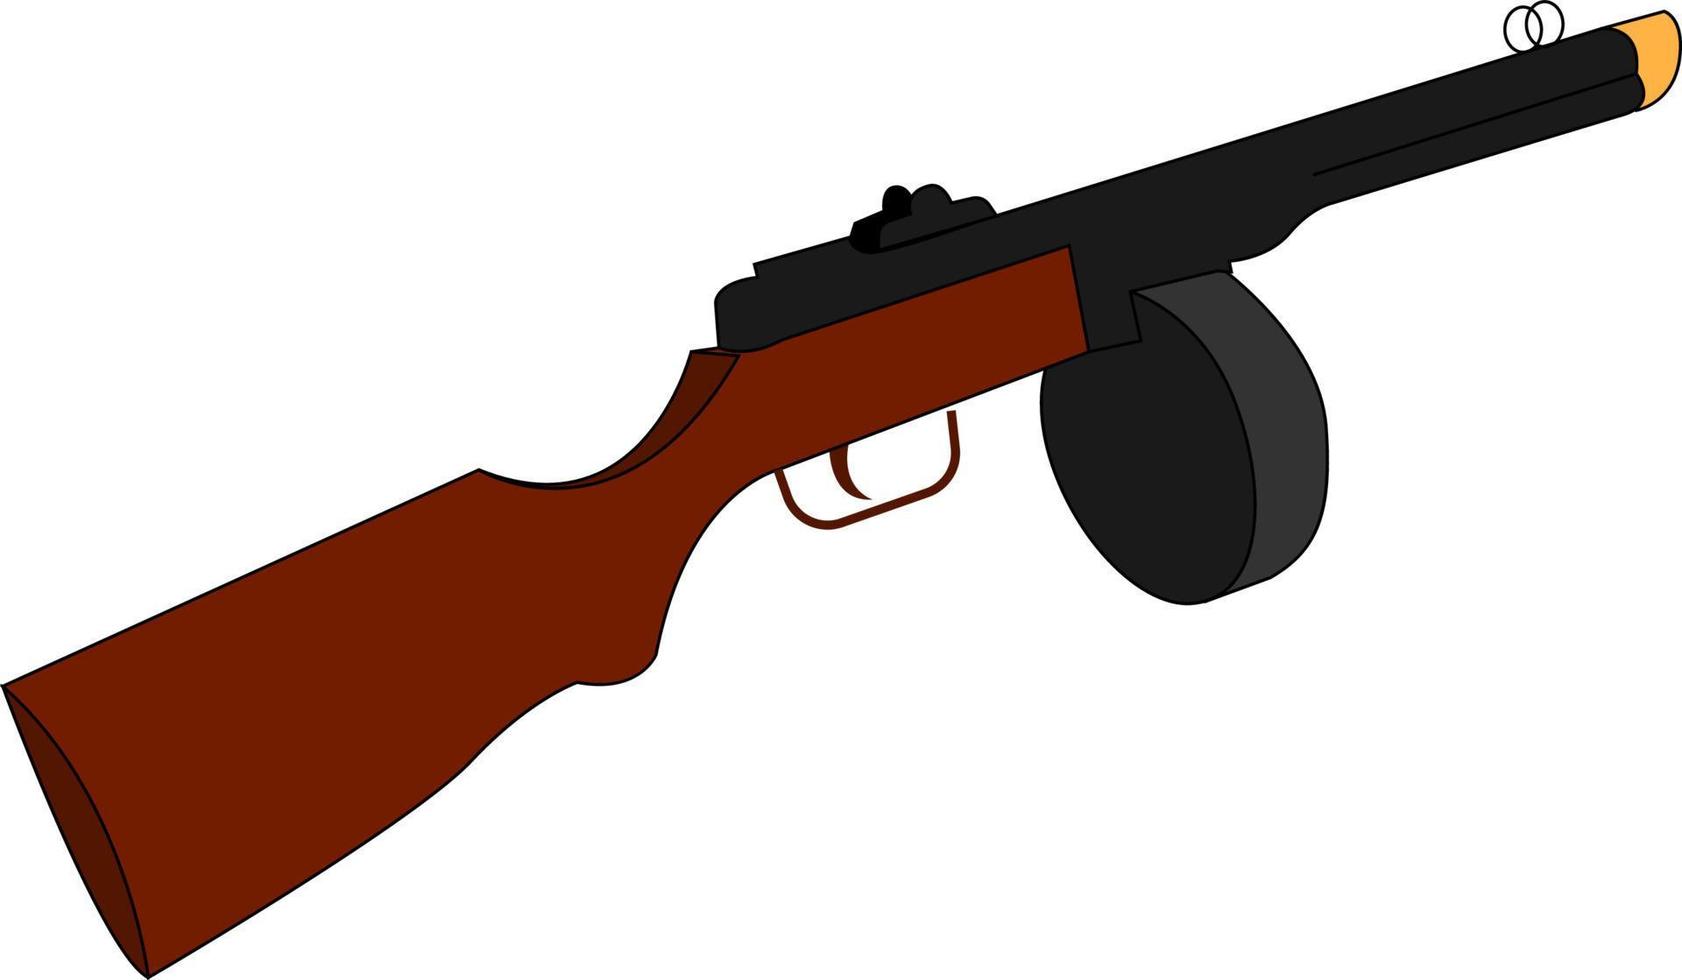 Machine gun, illustration, vector on white background.